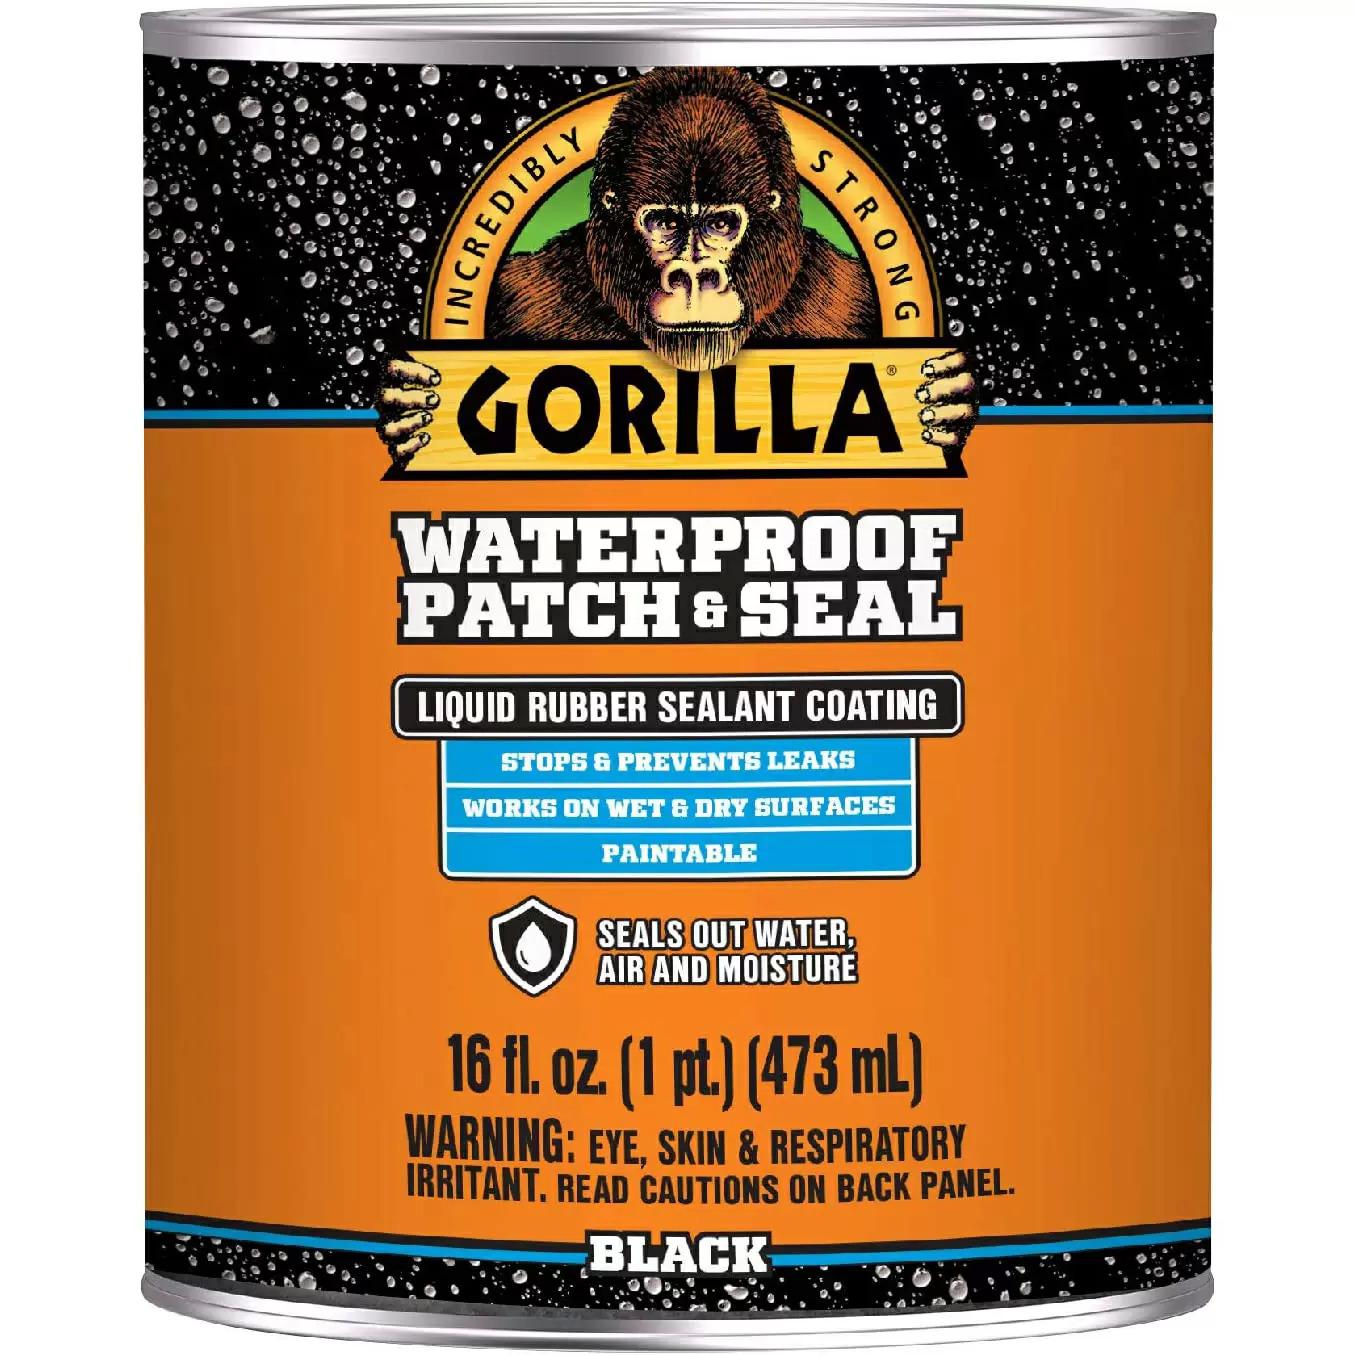 Gorilla Waterproof Patch & Seal Liquid for $11.48